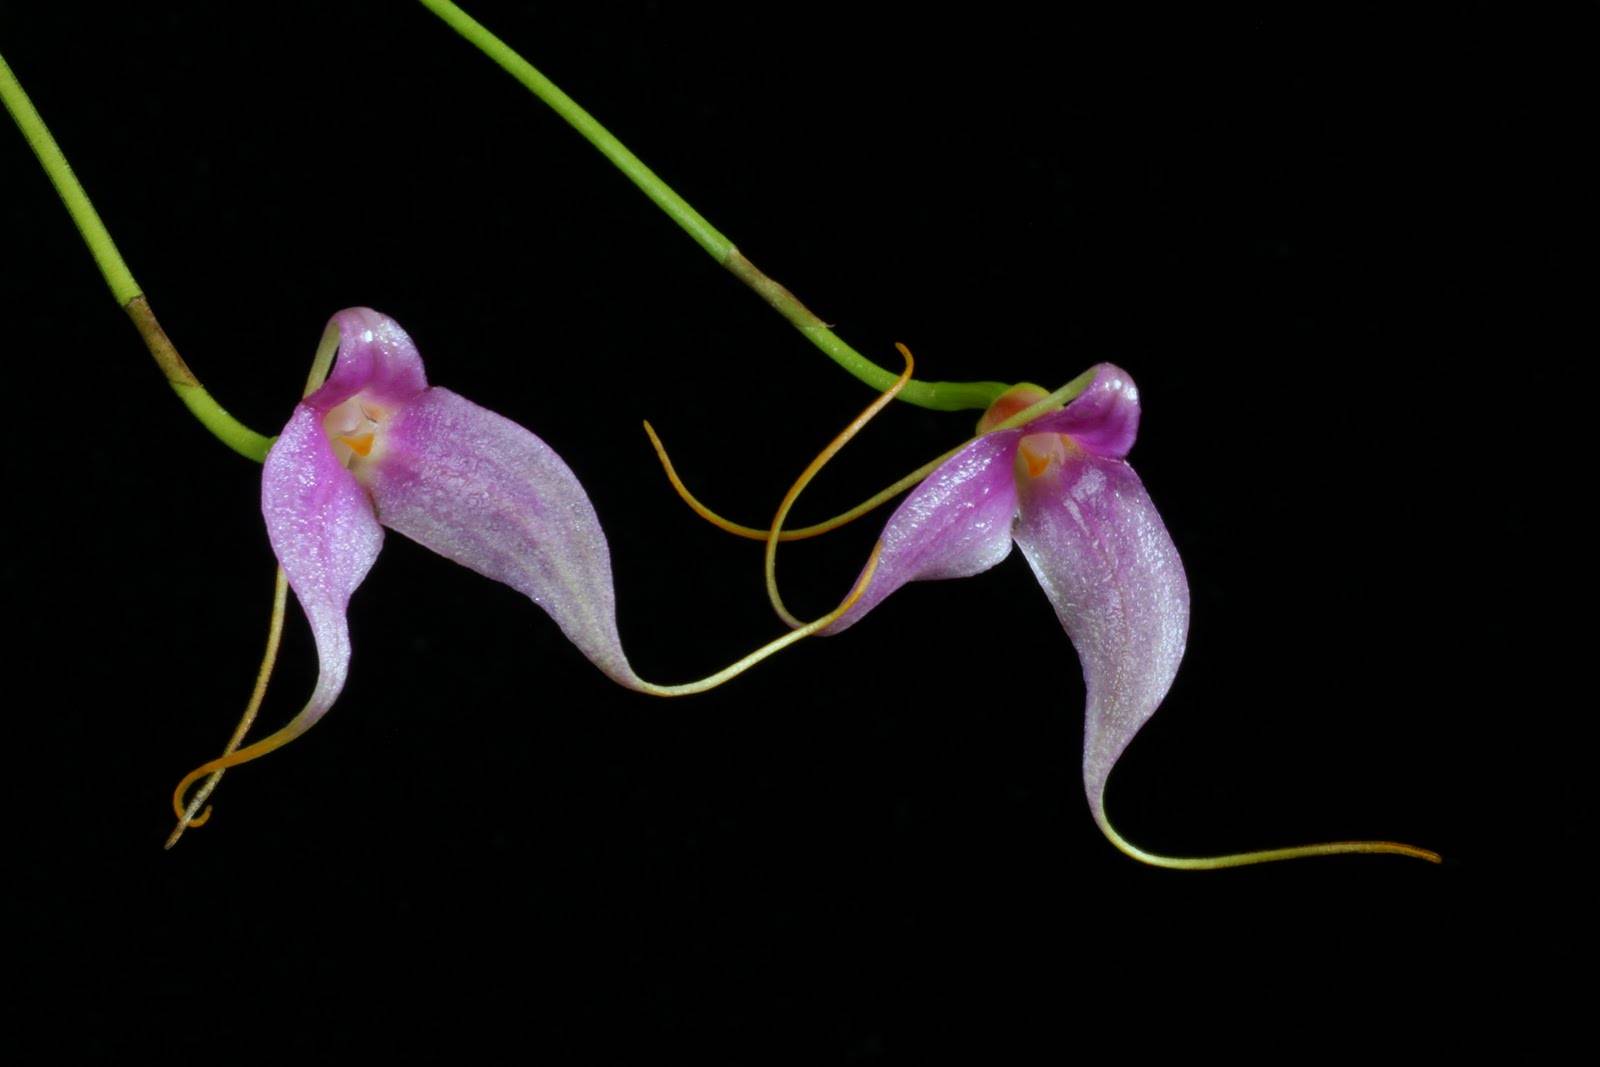 Масдеваллия: уход за орхидеей в домашних условиях